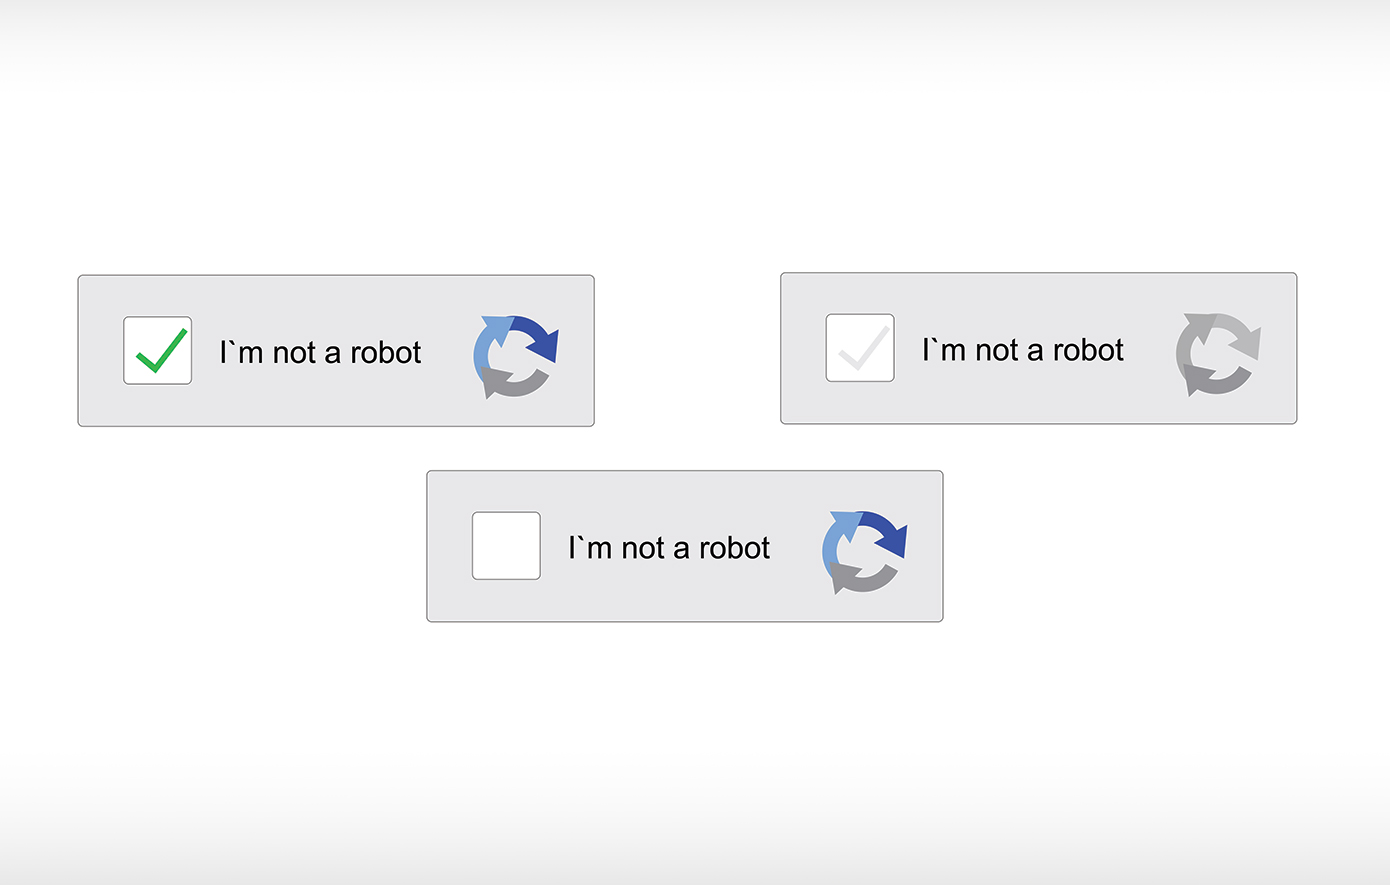 Τι πραγματικά συμβαίνει όταν δηλώνετε σε μια ιστοσελίδα πως «δεν είστε ρομπότ»